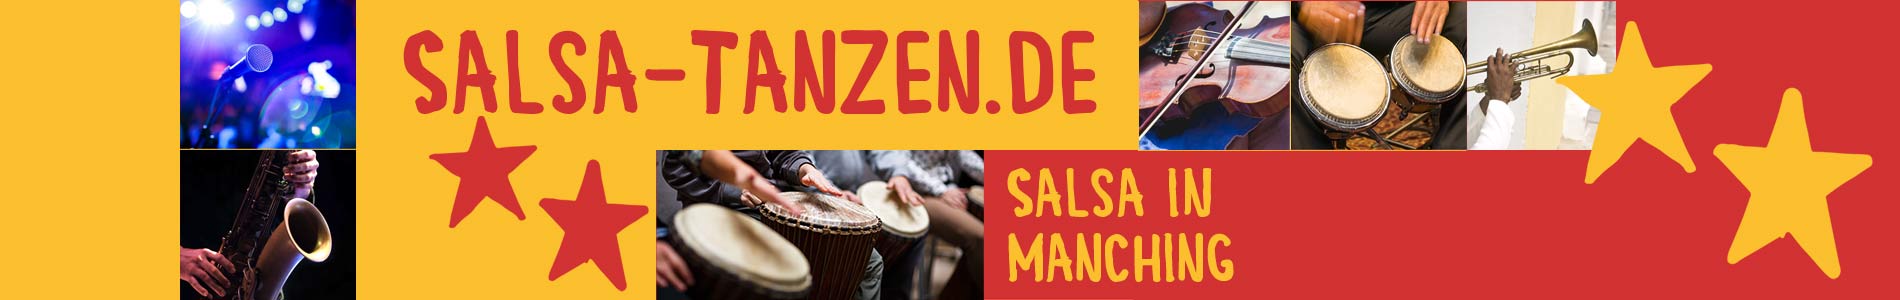 Salsa in Manching – Salsa lernen und tanzen, Tanzkurse, Partys, Veranstaltungen